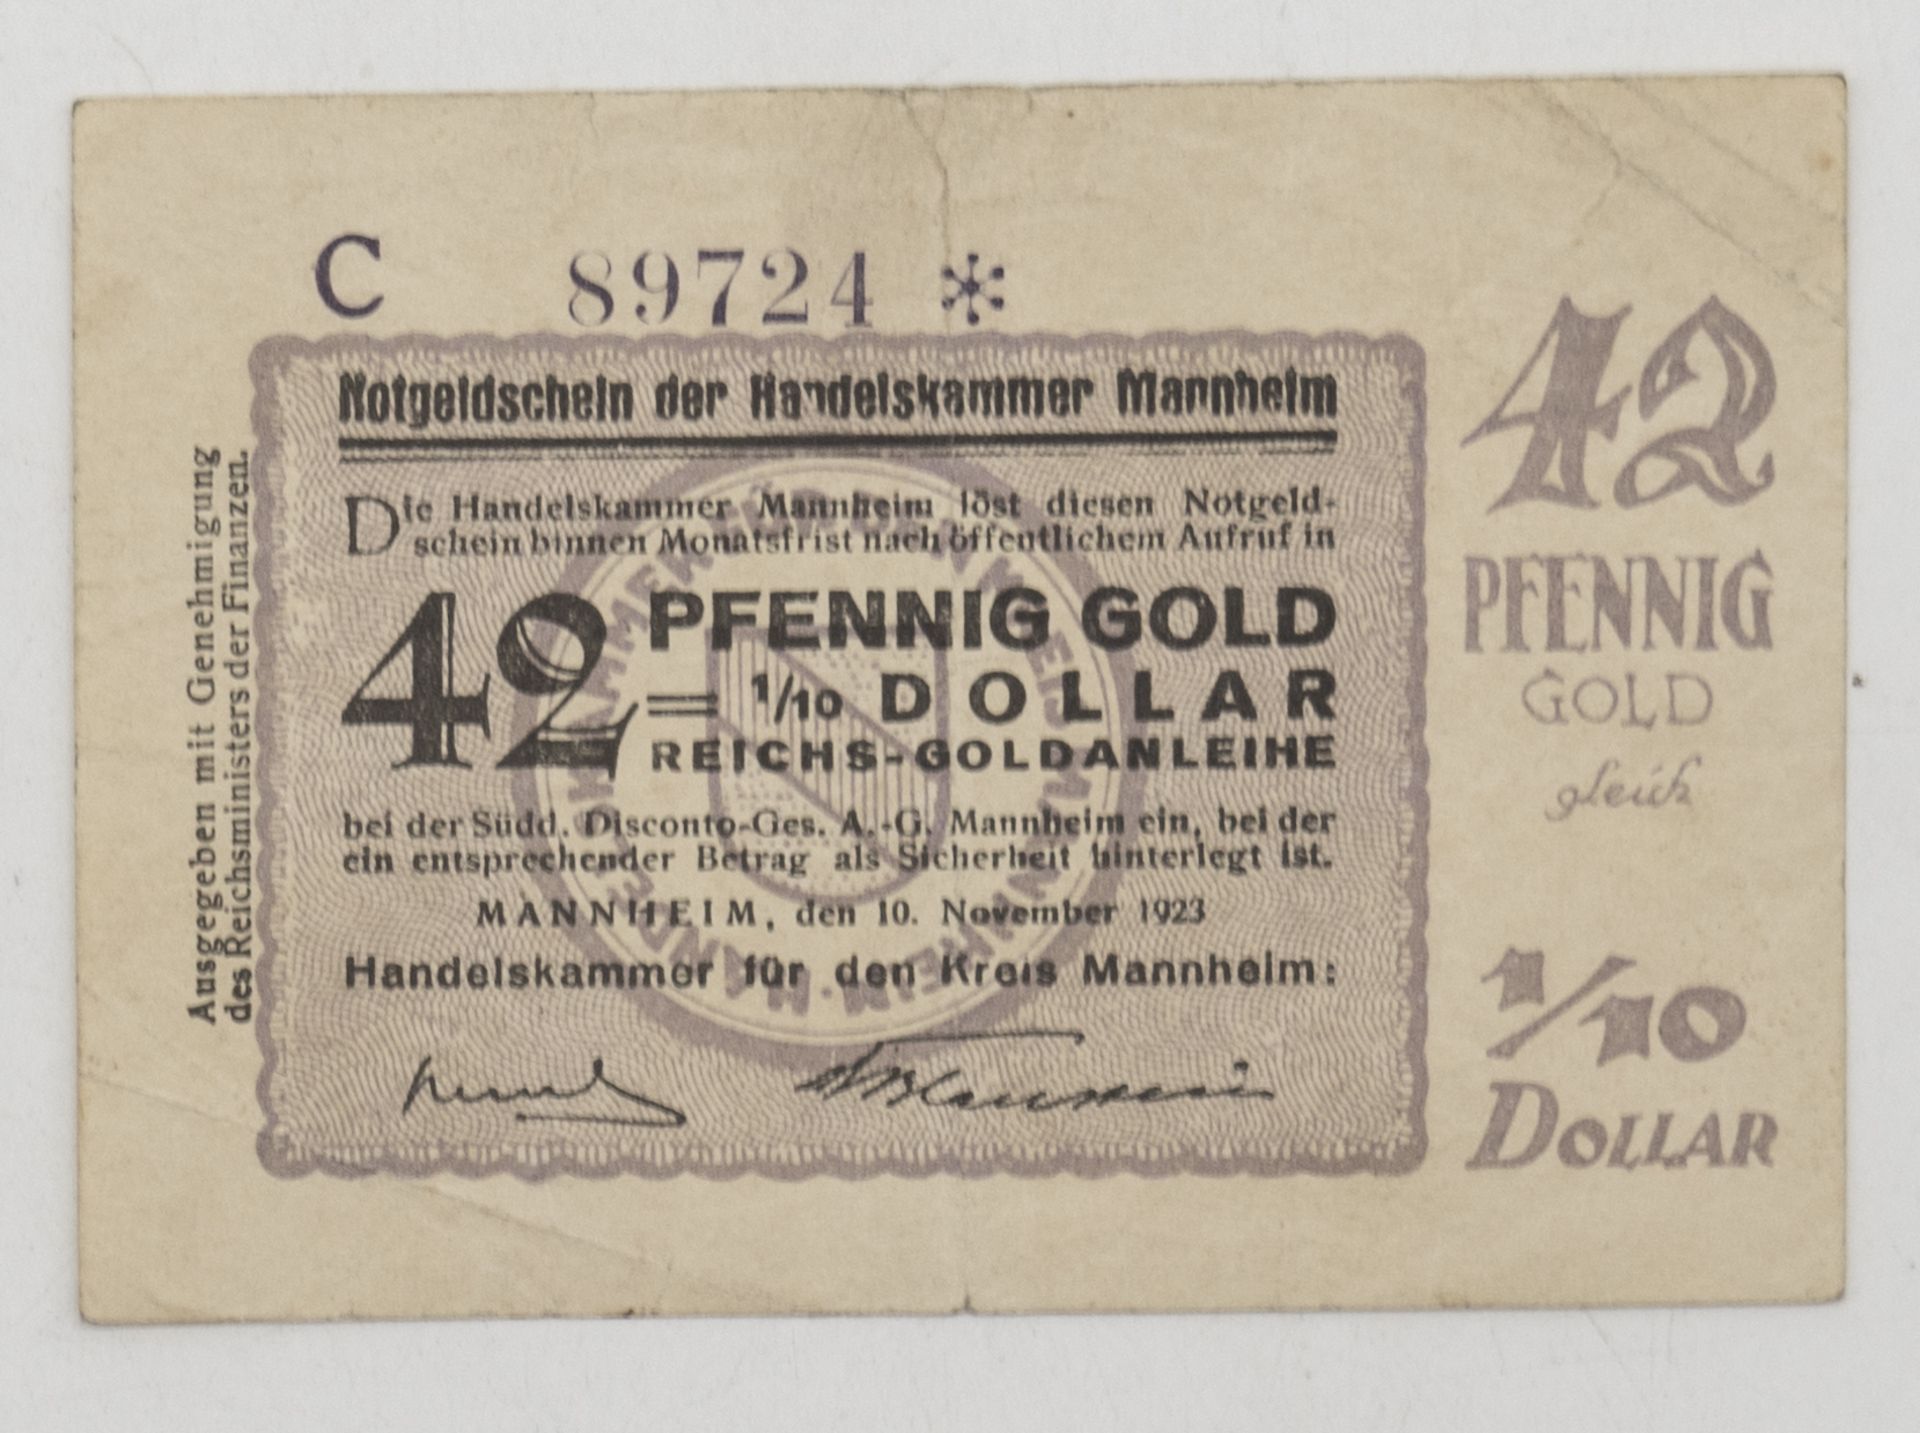 Notgeld der Handelskammer Mannheim, 10. November 1923, 42 Pfennig Gold = 1/10 Dollar. Erhaltung: